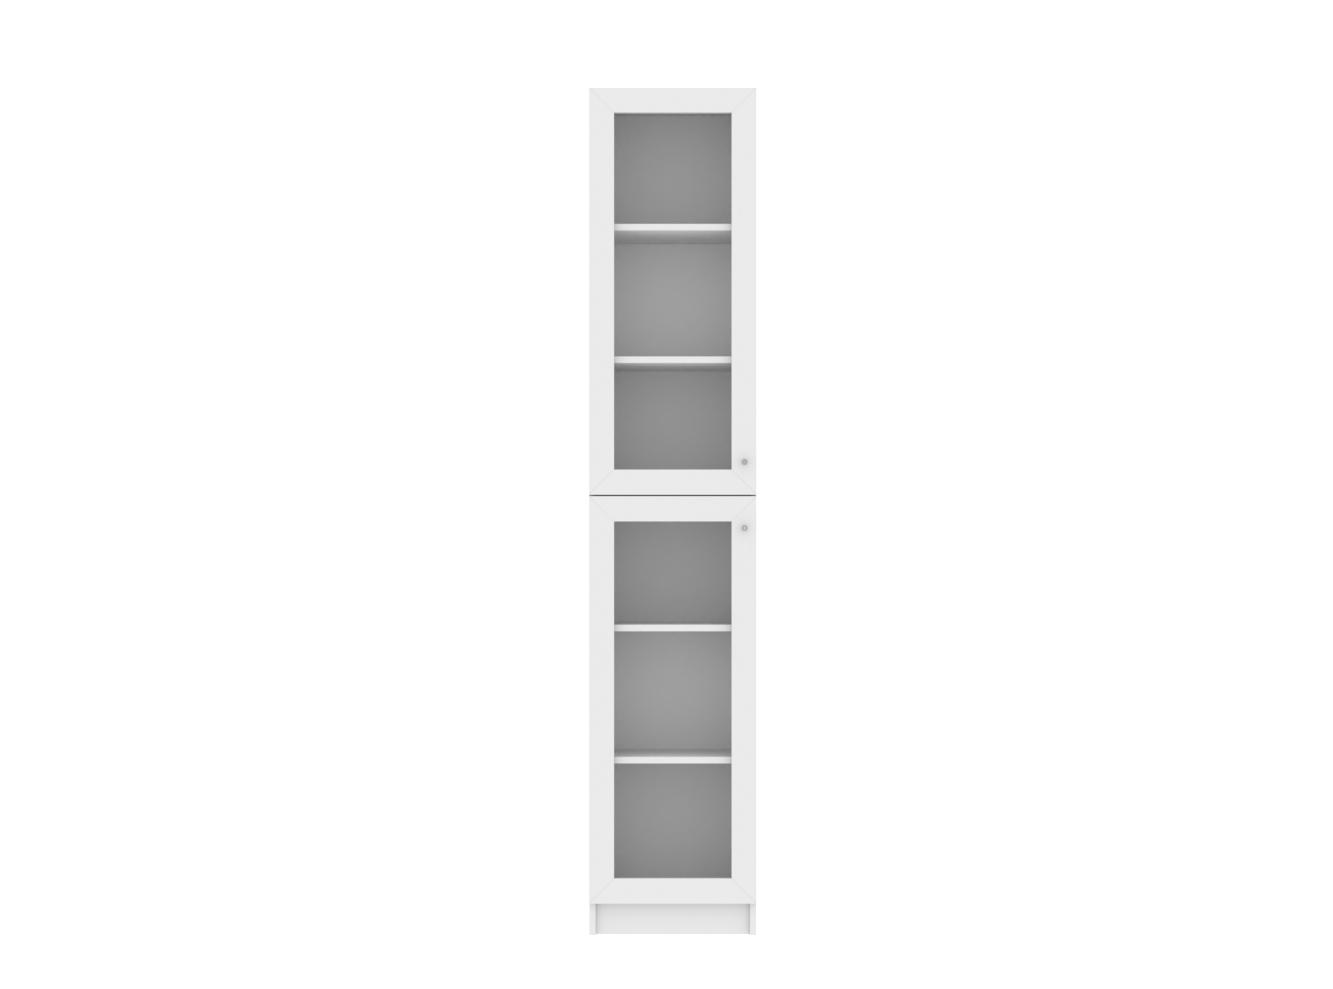 Изображение товара Книжный шкаф Билли 331 white ИКЕА (IKEA), 40x30x202 см на сайте adeta.ru